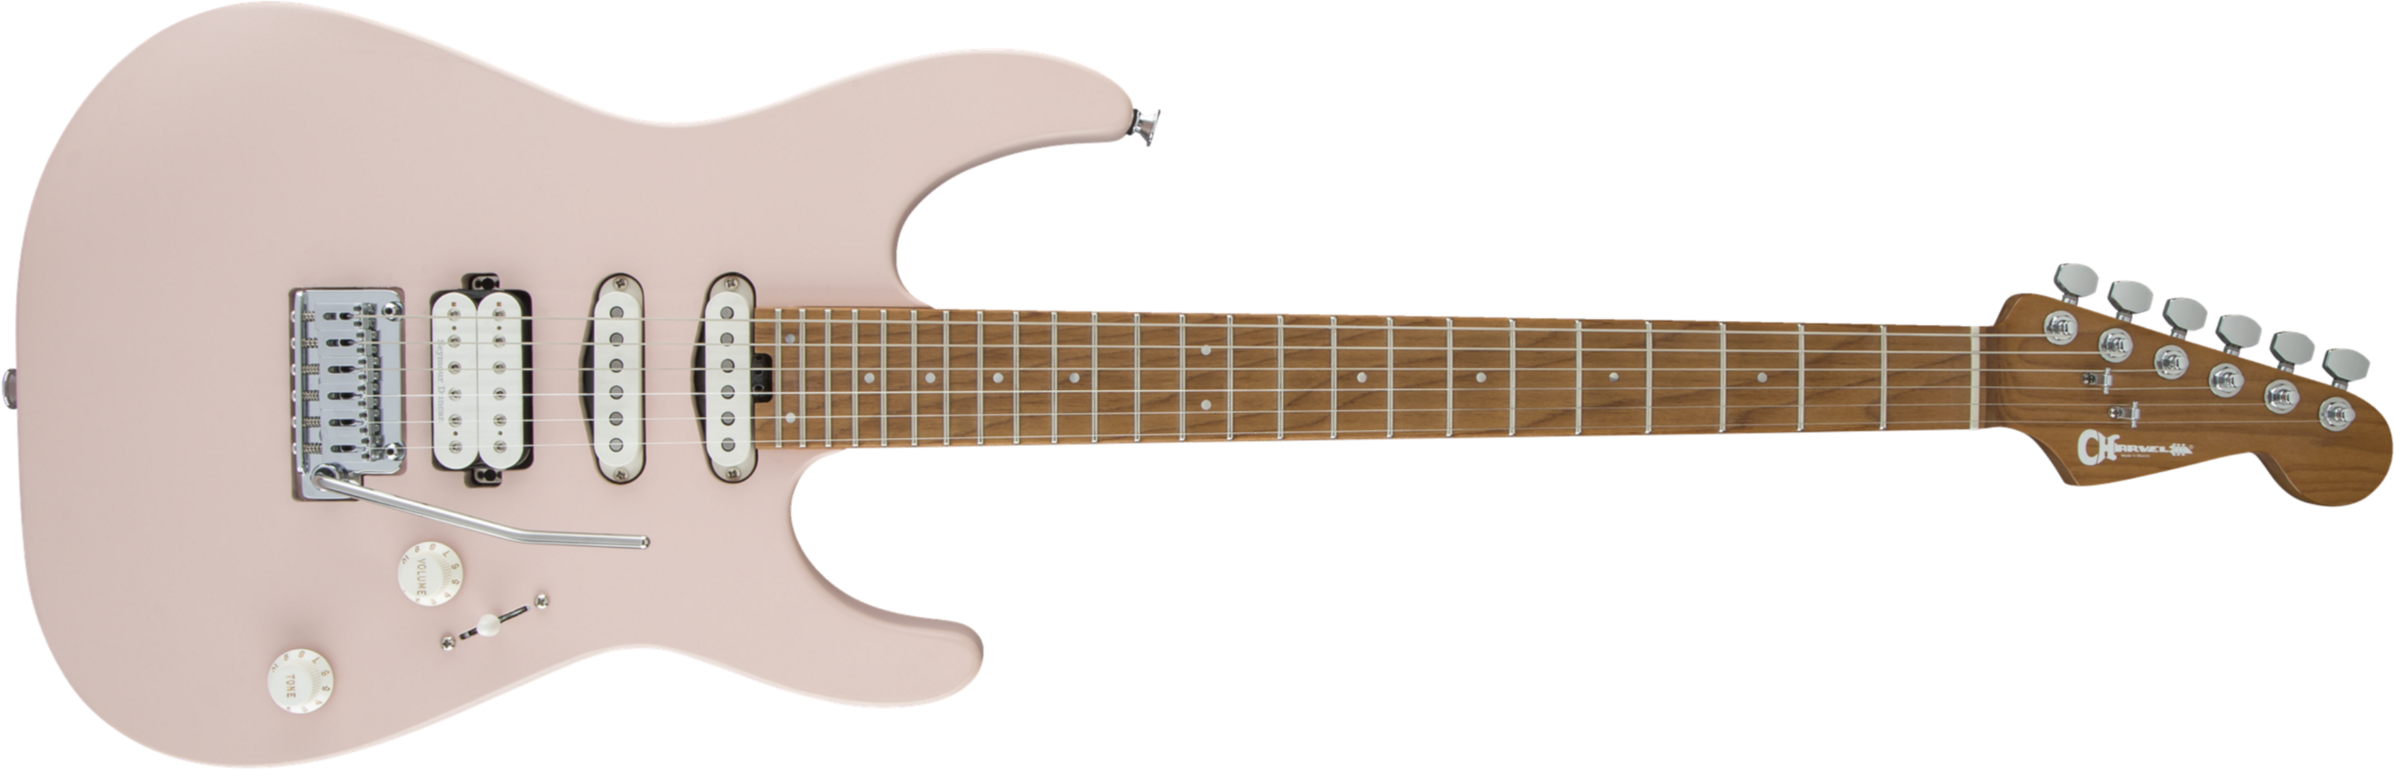 Charvel Pro-mod Dk24 Hss 2pt Cm Trem Mn - Satin Shell Pink - Guitarra eléctrica con forma de str. - Main picture